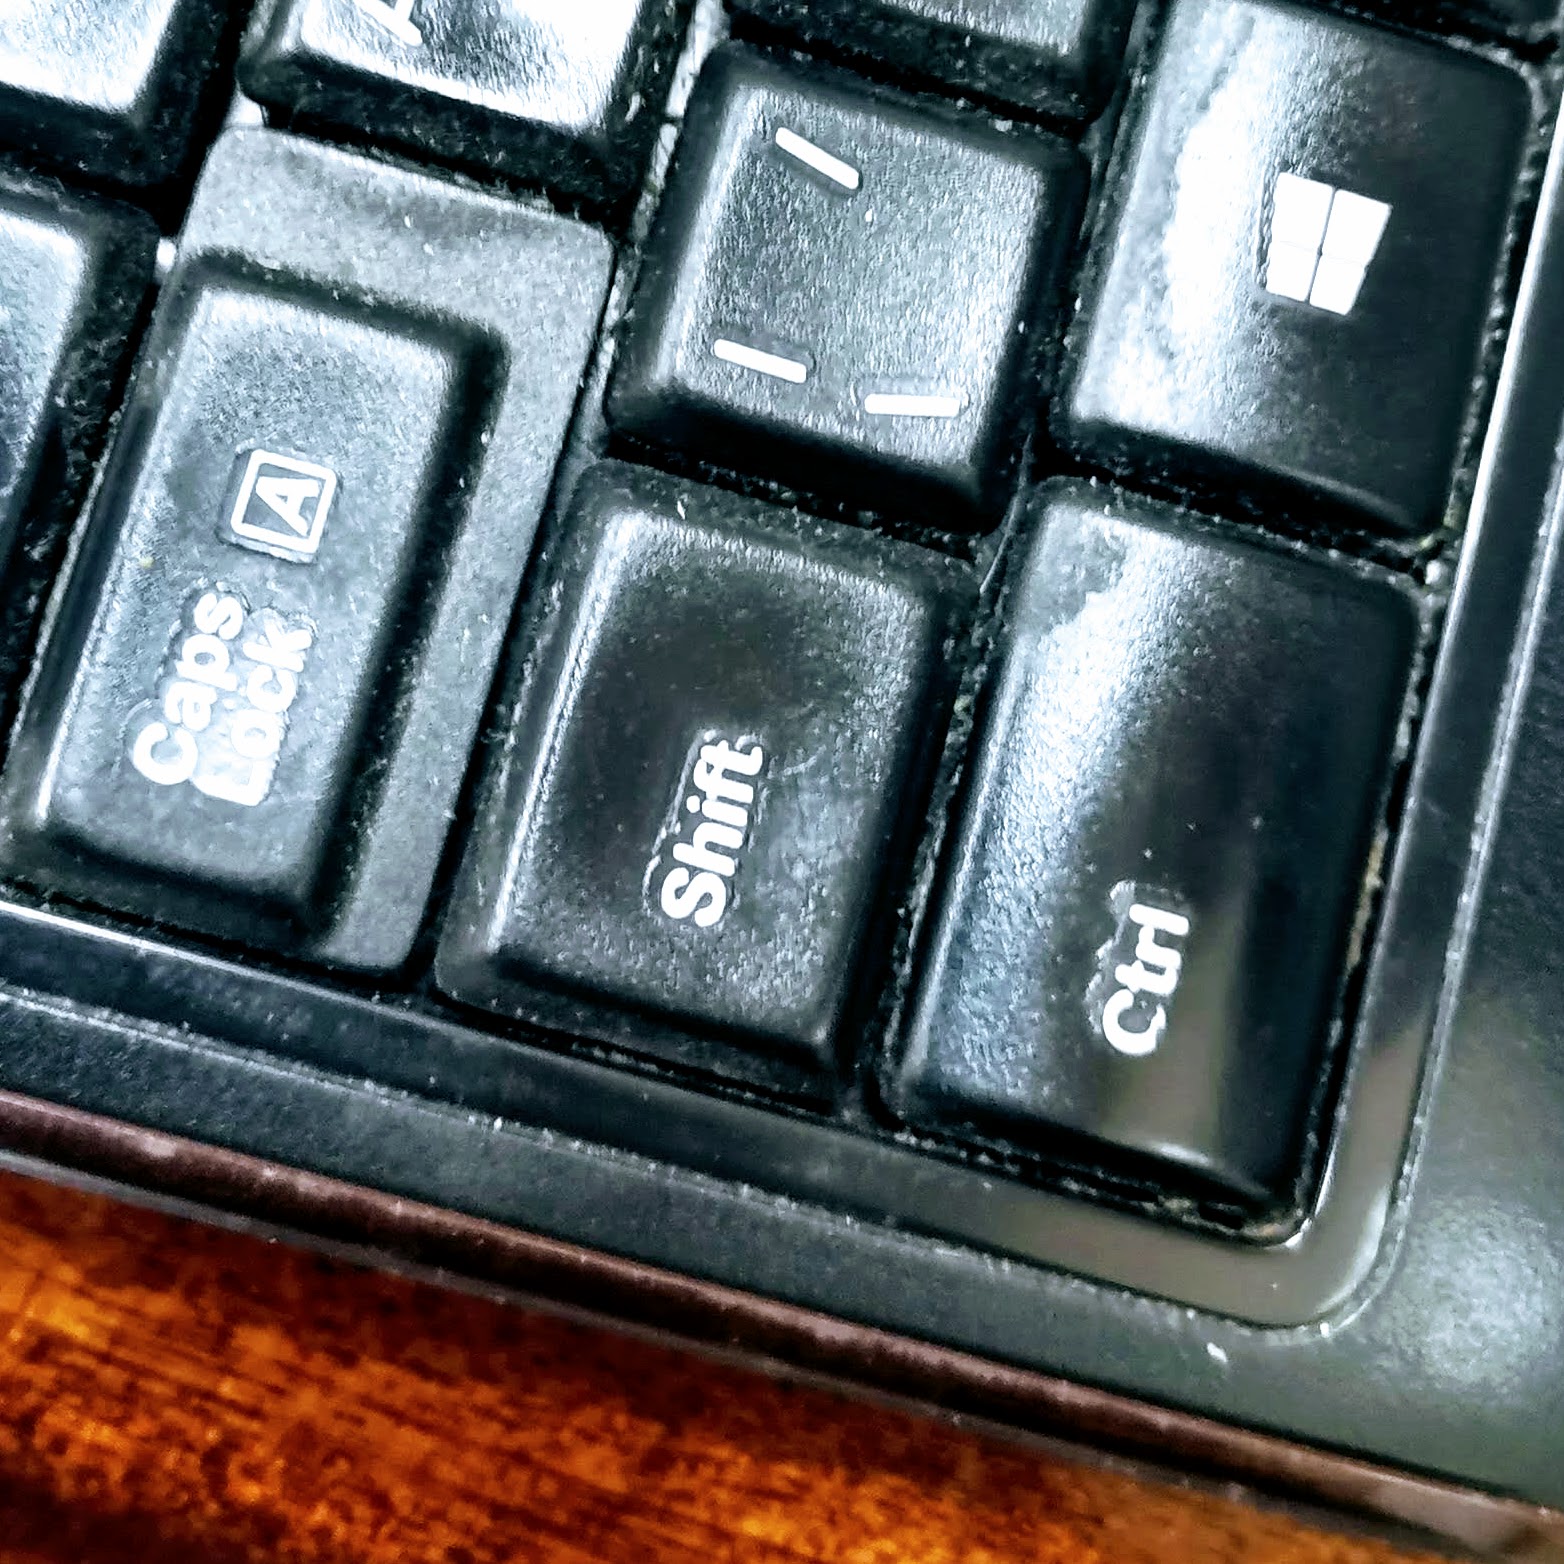 Клавиатура, которая убьет удобную работу с Windows кнопки, часто, компоновка, пример, кнопка, управления, кнопок, клавиатуры, производителей, Shift, никогда, позволяет, кнопку, точнее, попадать, стандартная, выборе, модели, производители, клавиатурах